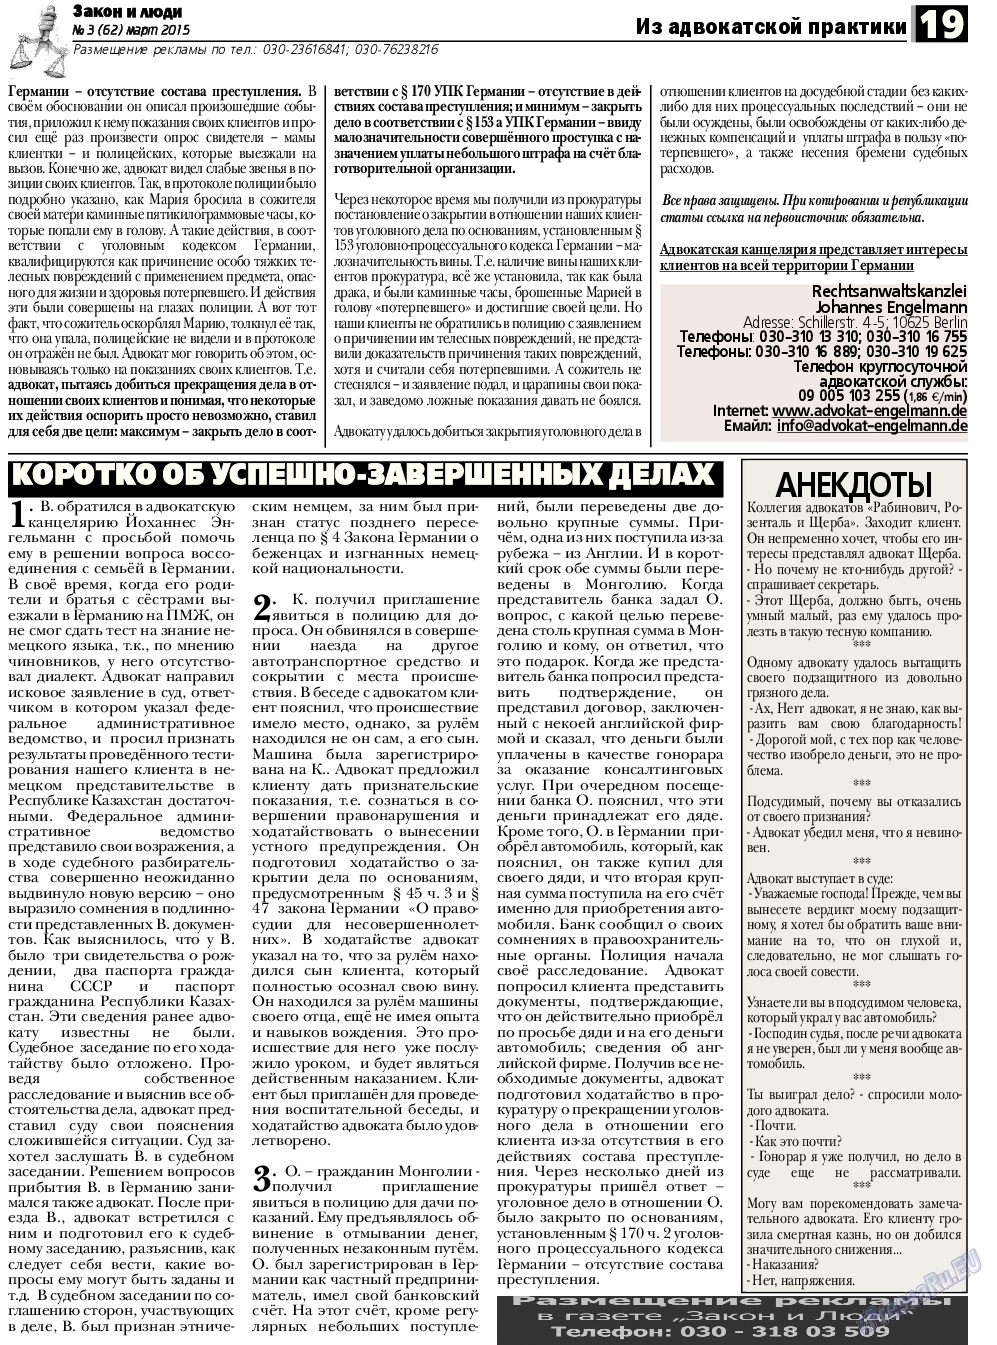 Закон и люди, газета. 2015 №3 стр.19